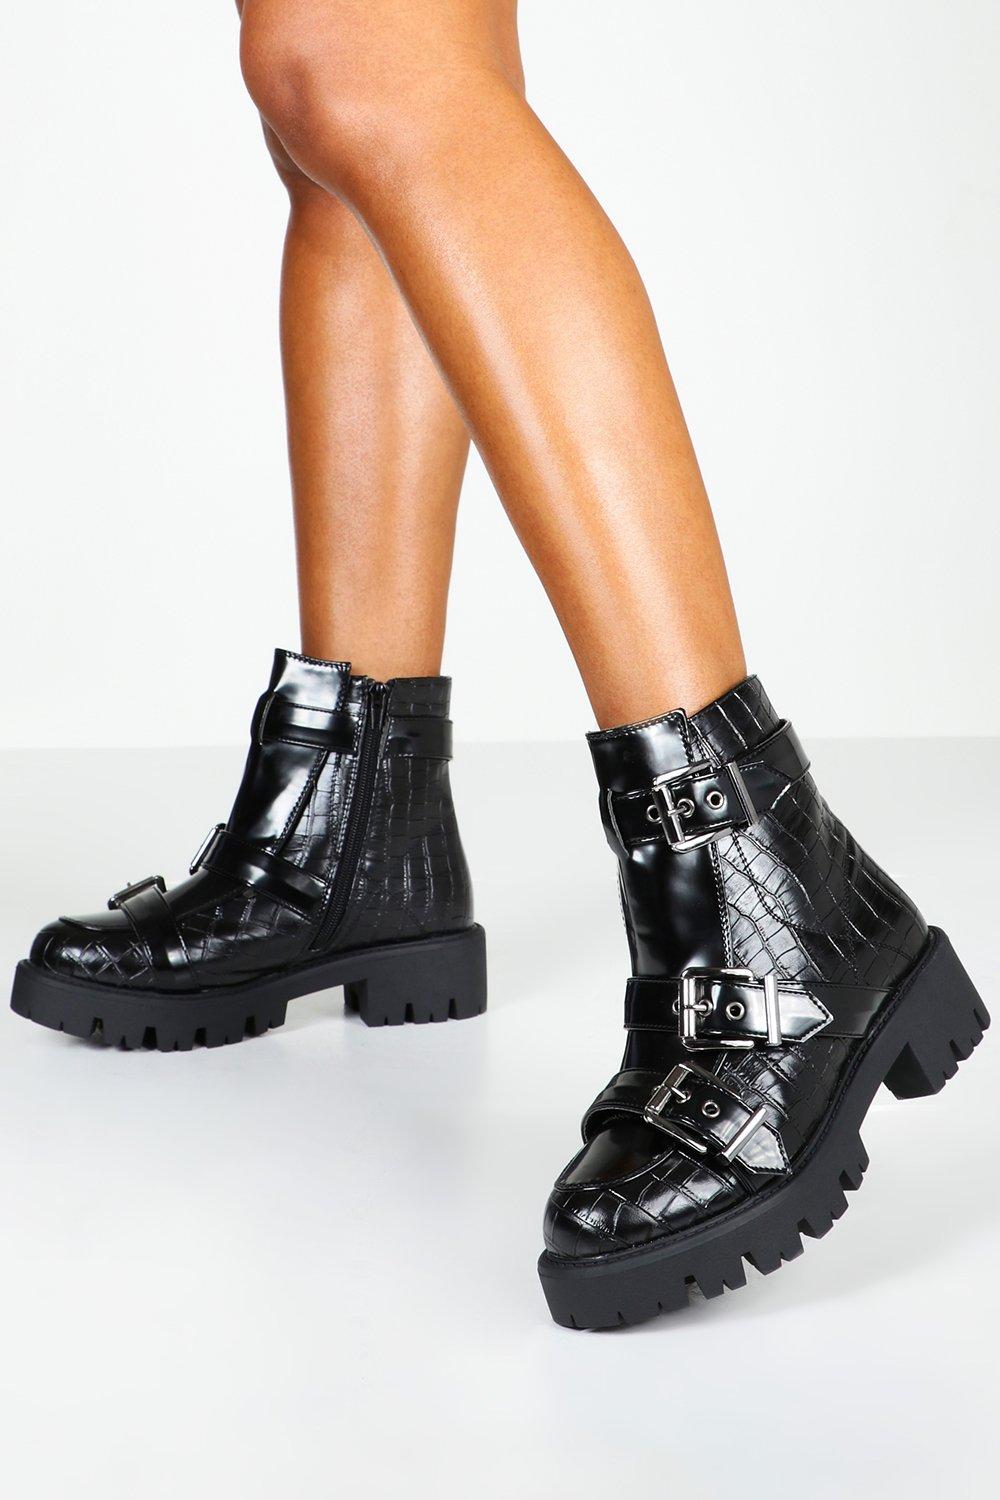 boohoo croc boots